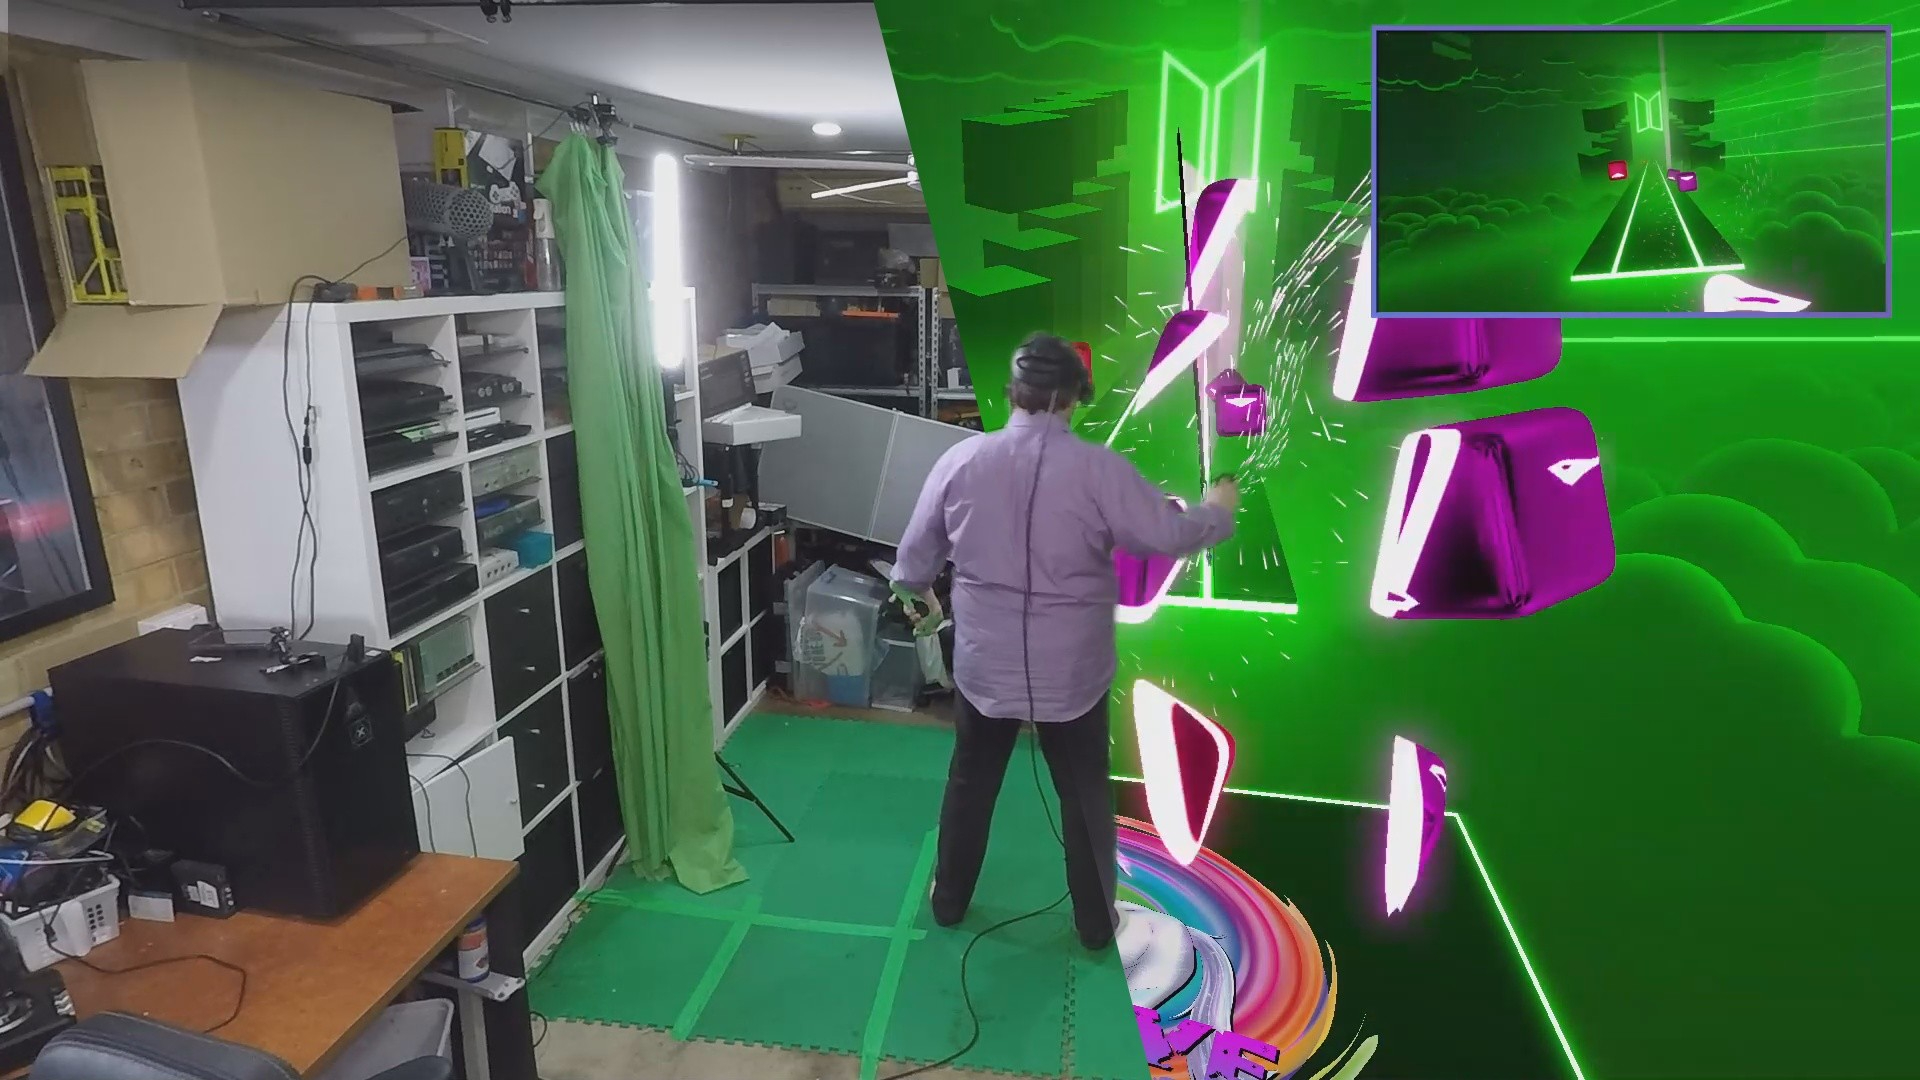 Beat saber oynayan bir kişiyi hem gerçek dünyada hem de VR'da görebilirsiniz